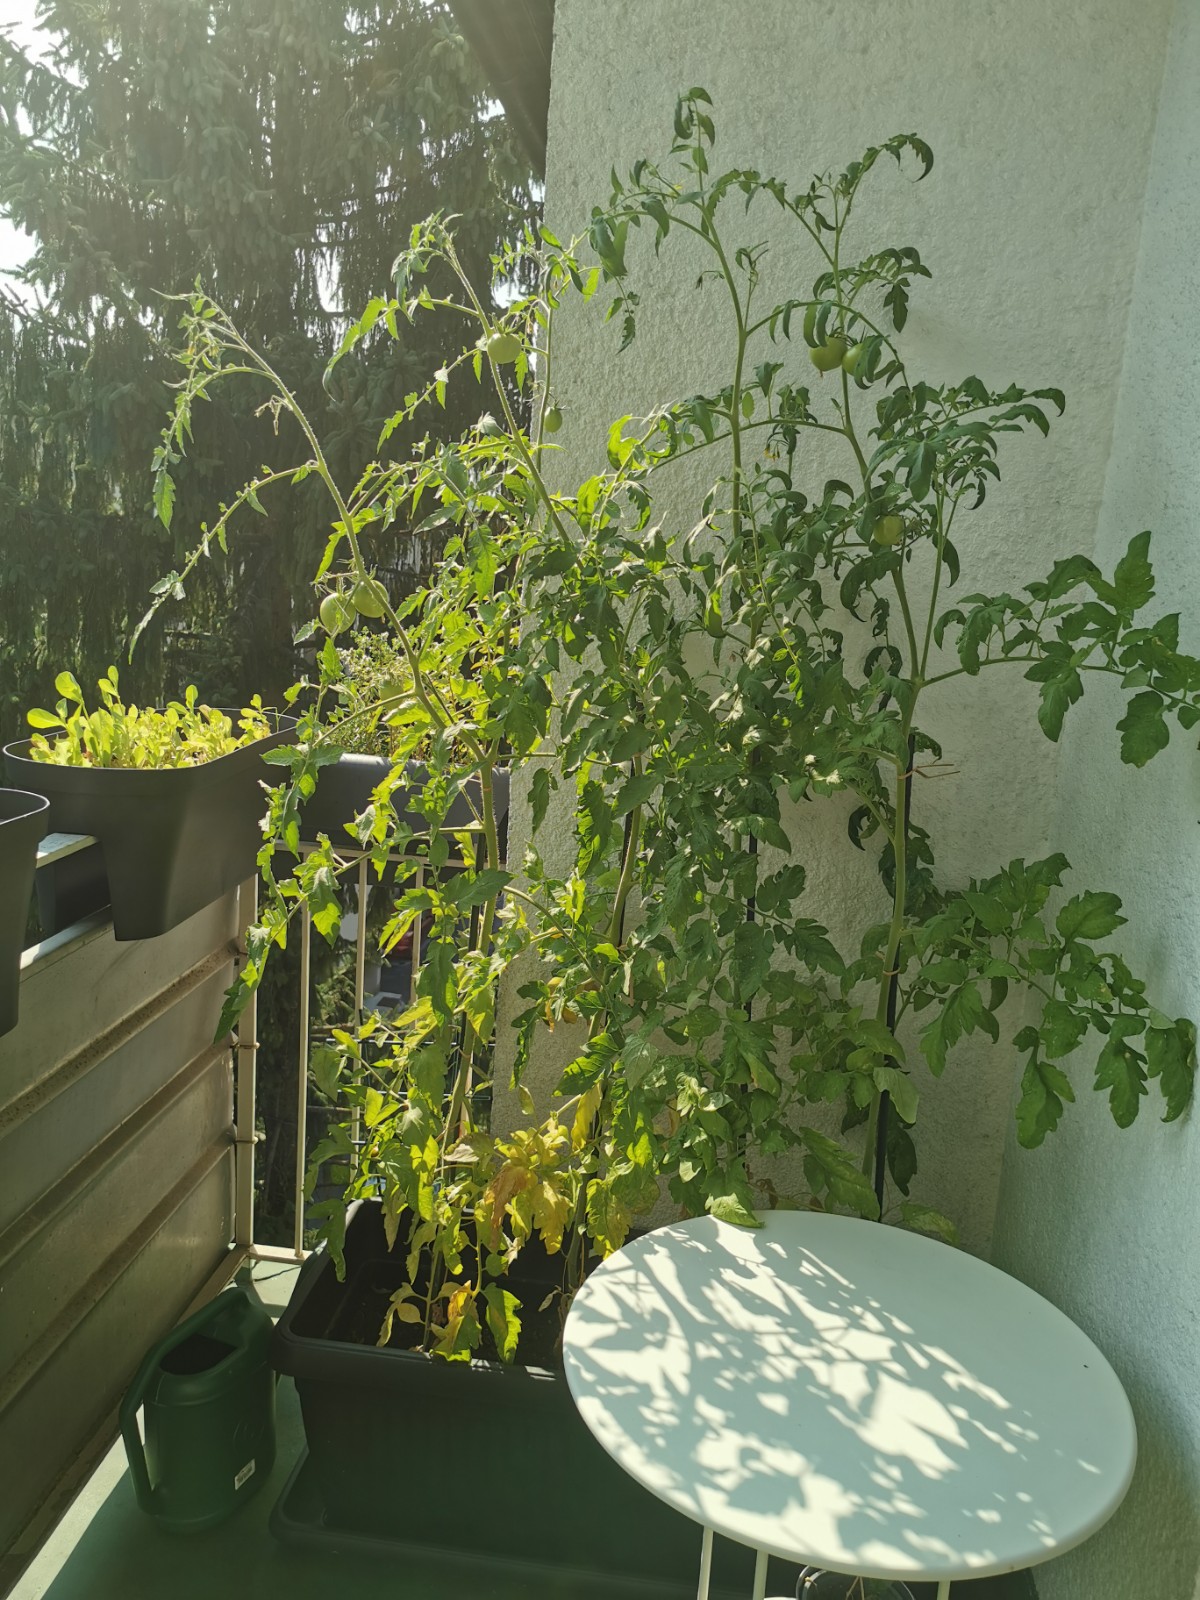 four tomato plants